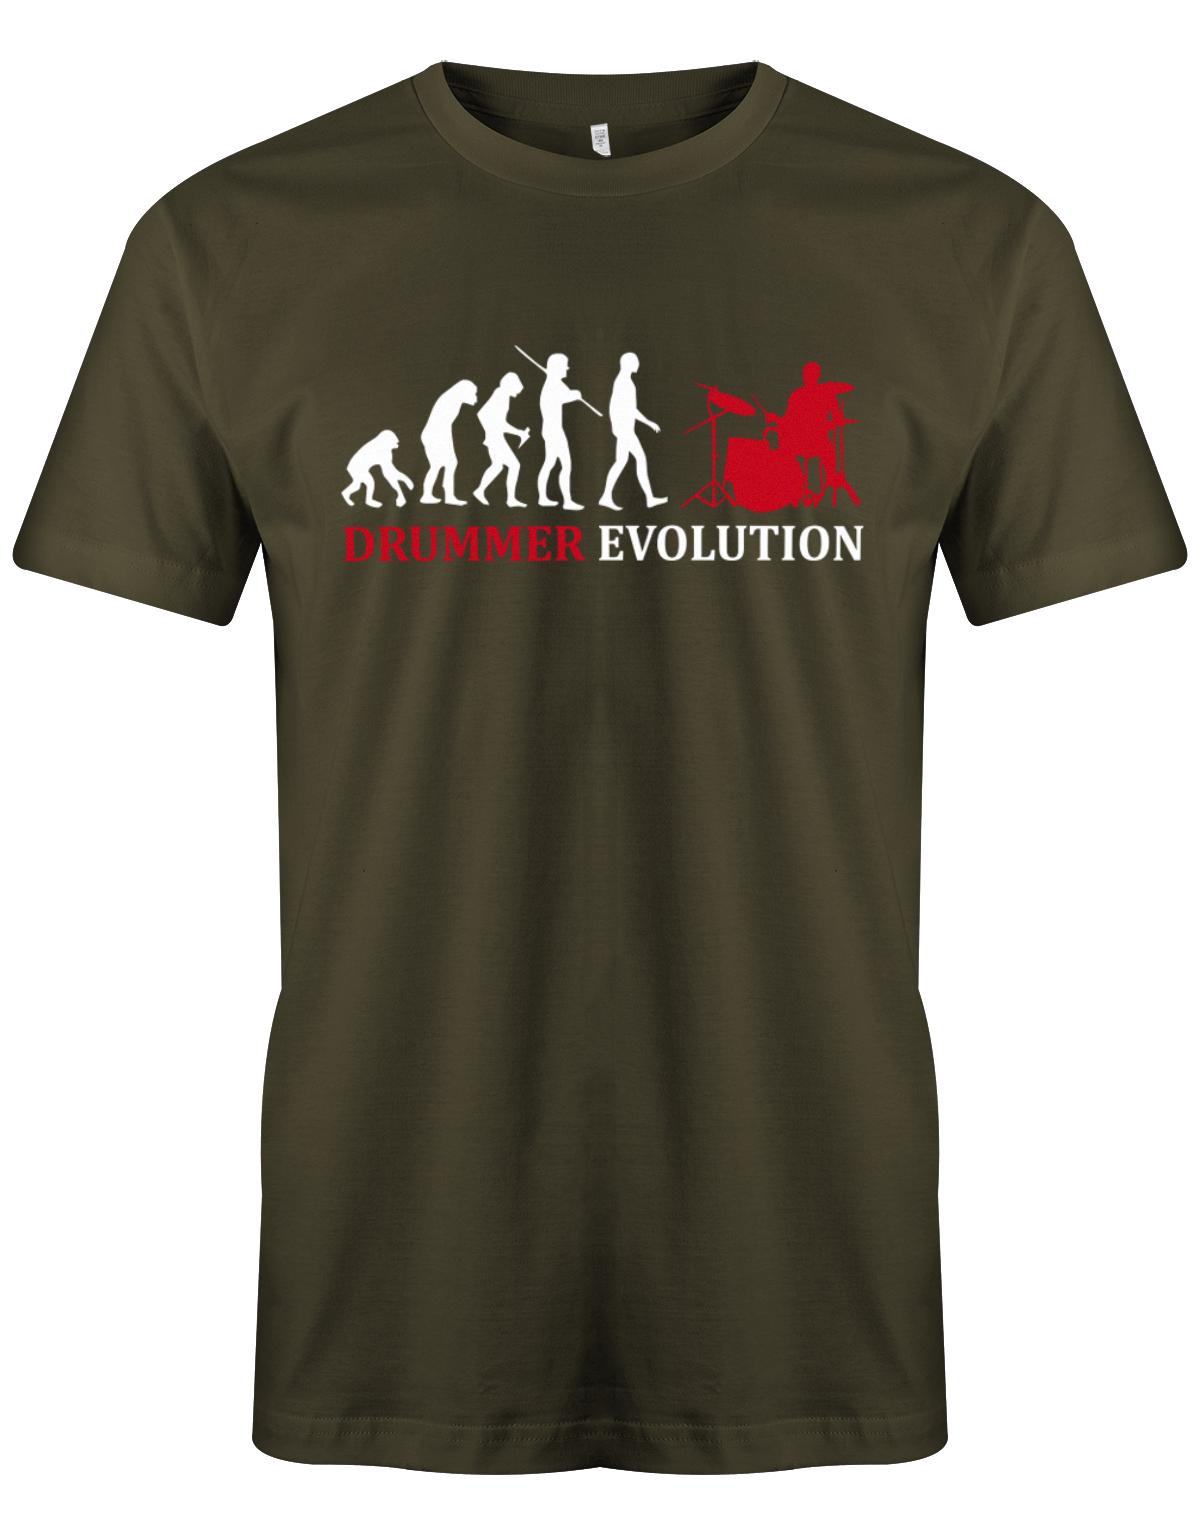 Drummer-Evolution-Herren-Shirt-Army